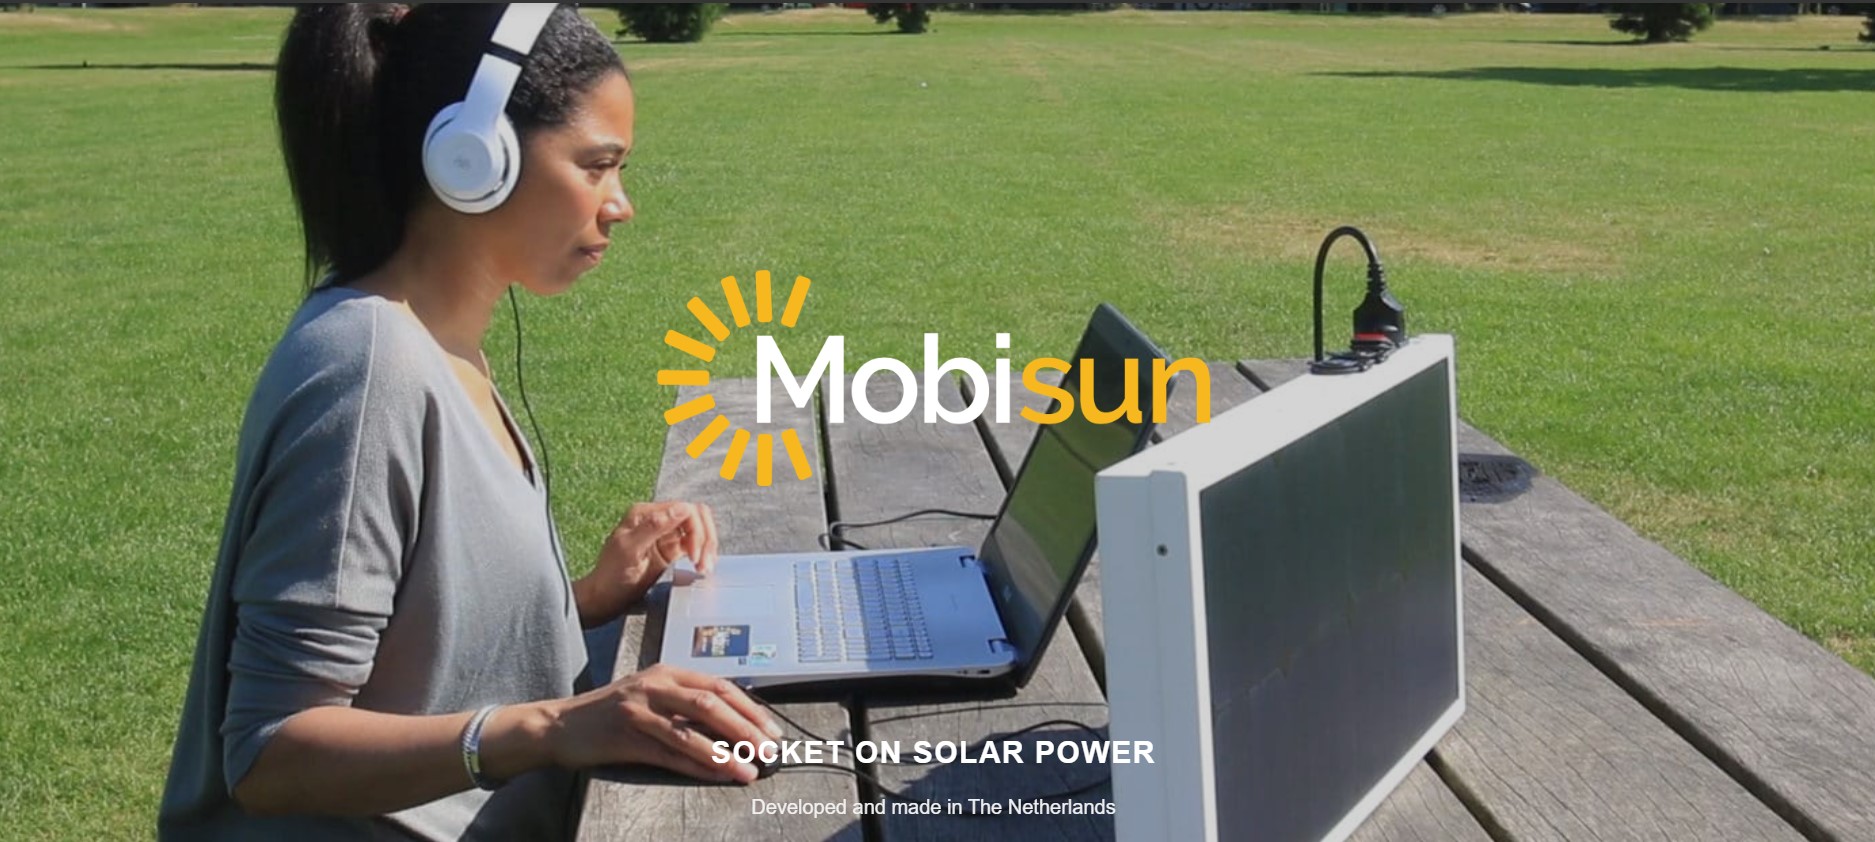 Mobisun Pro met aanvullende lichtgewicht draagbare zonnepanelen